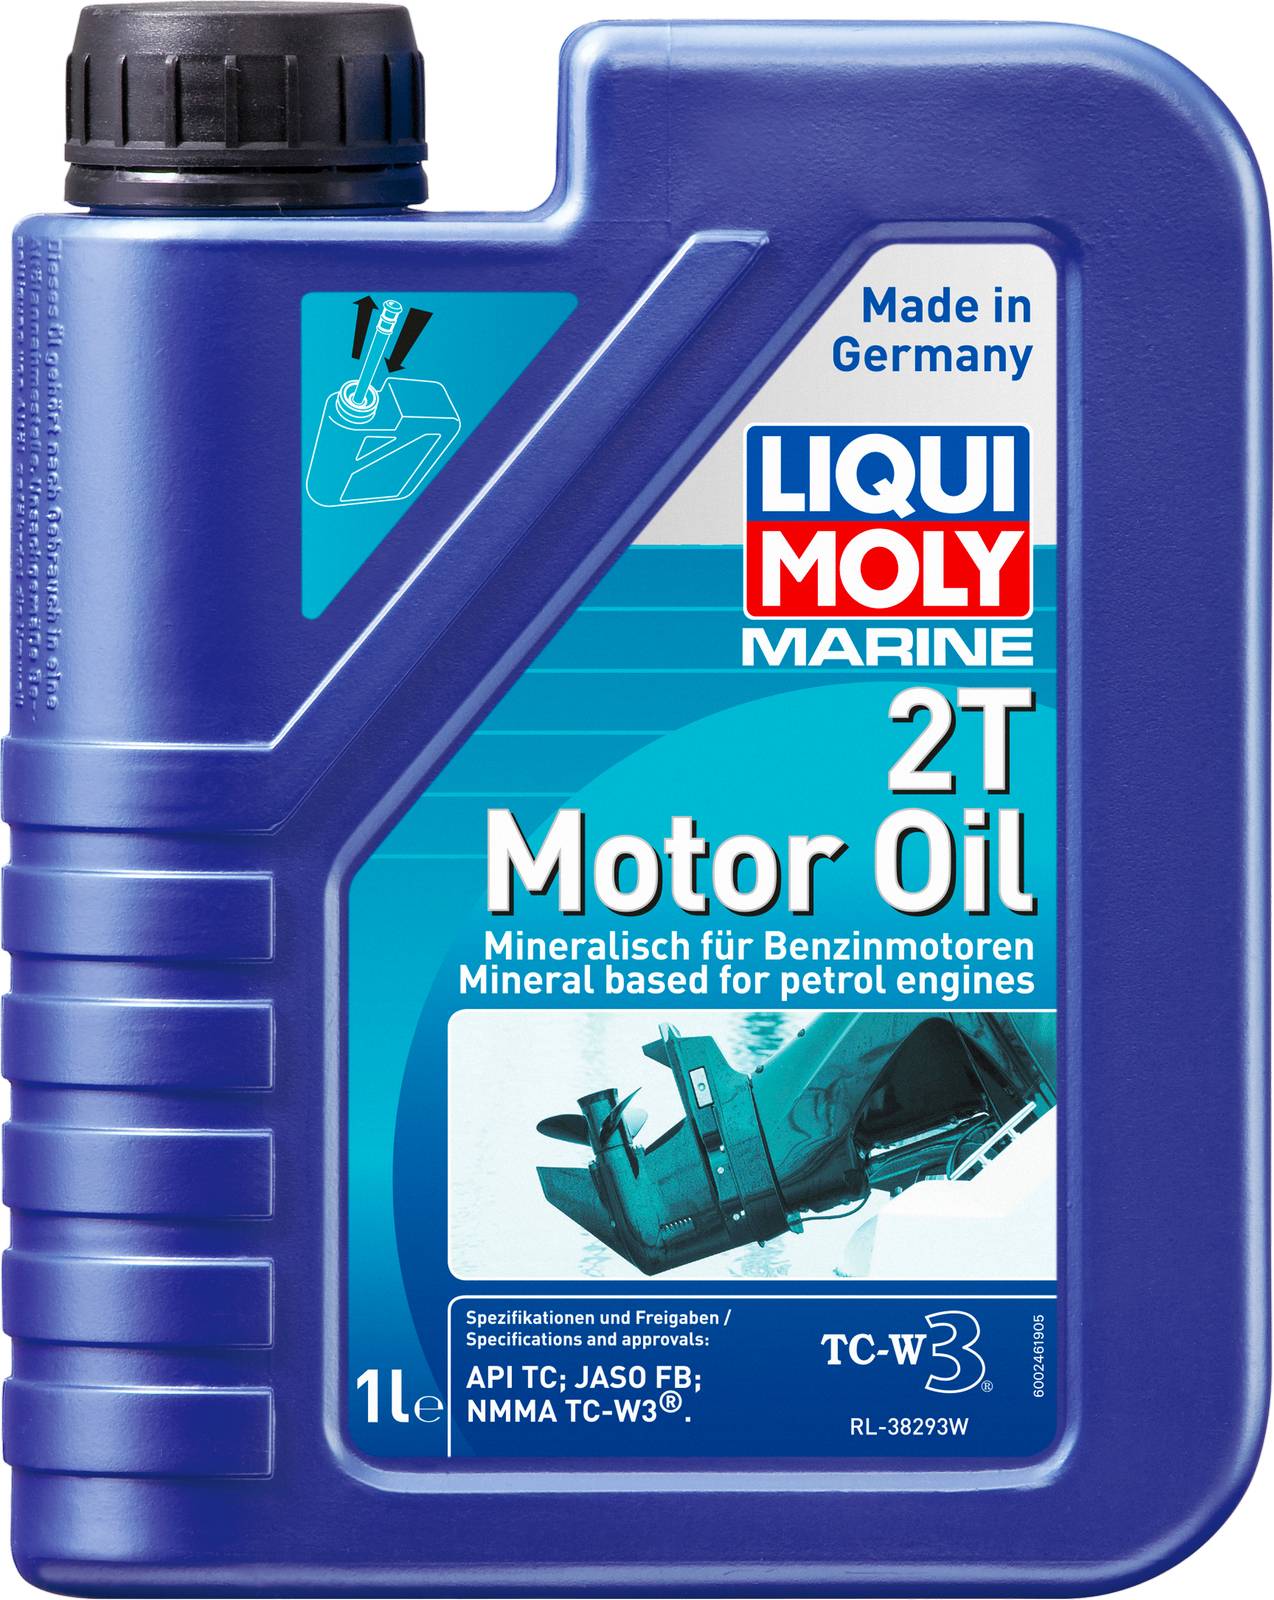 АВТОМАСЛА Моторное масло для водной техники Liqui Moly Marine 2T Motor Oil 1л